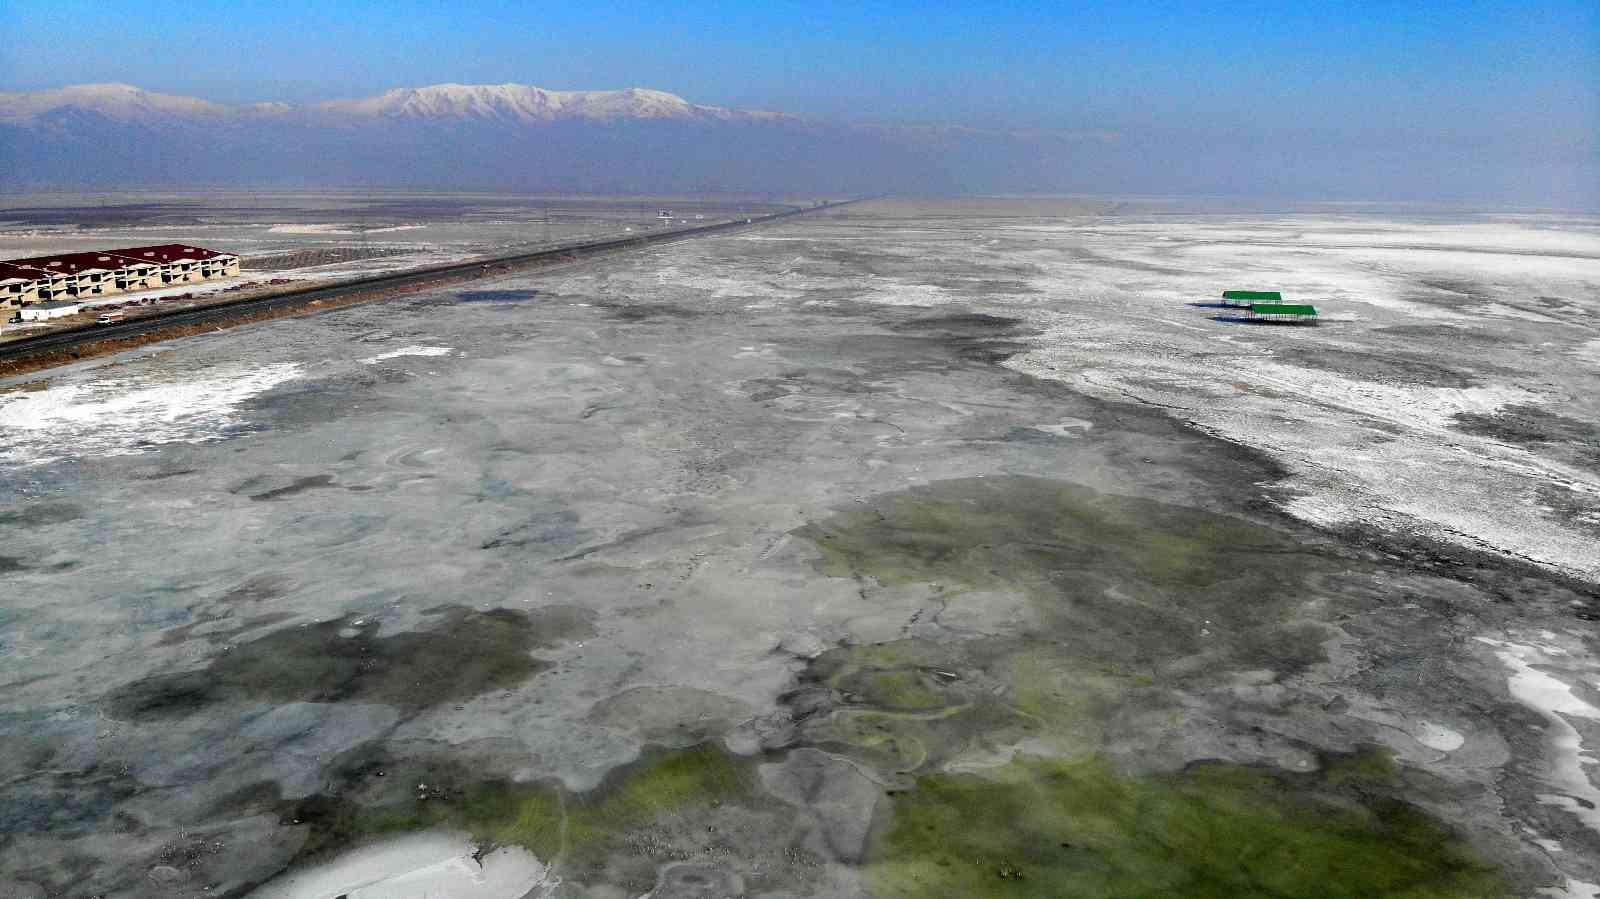 Buzla kaplanan Erzurum Ovası manzarasıyla mest etti #erzurum